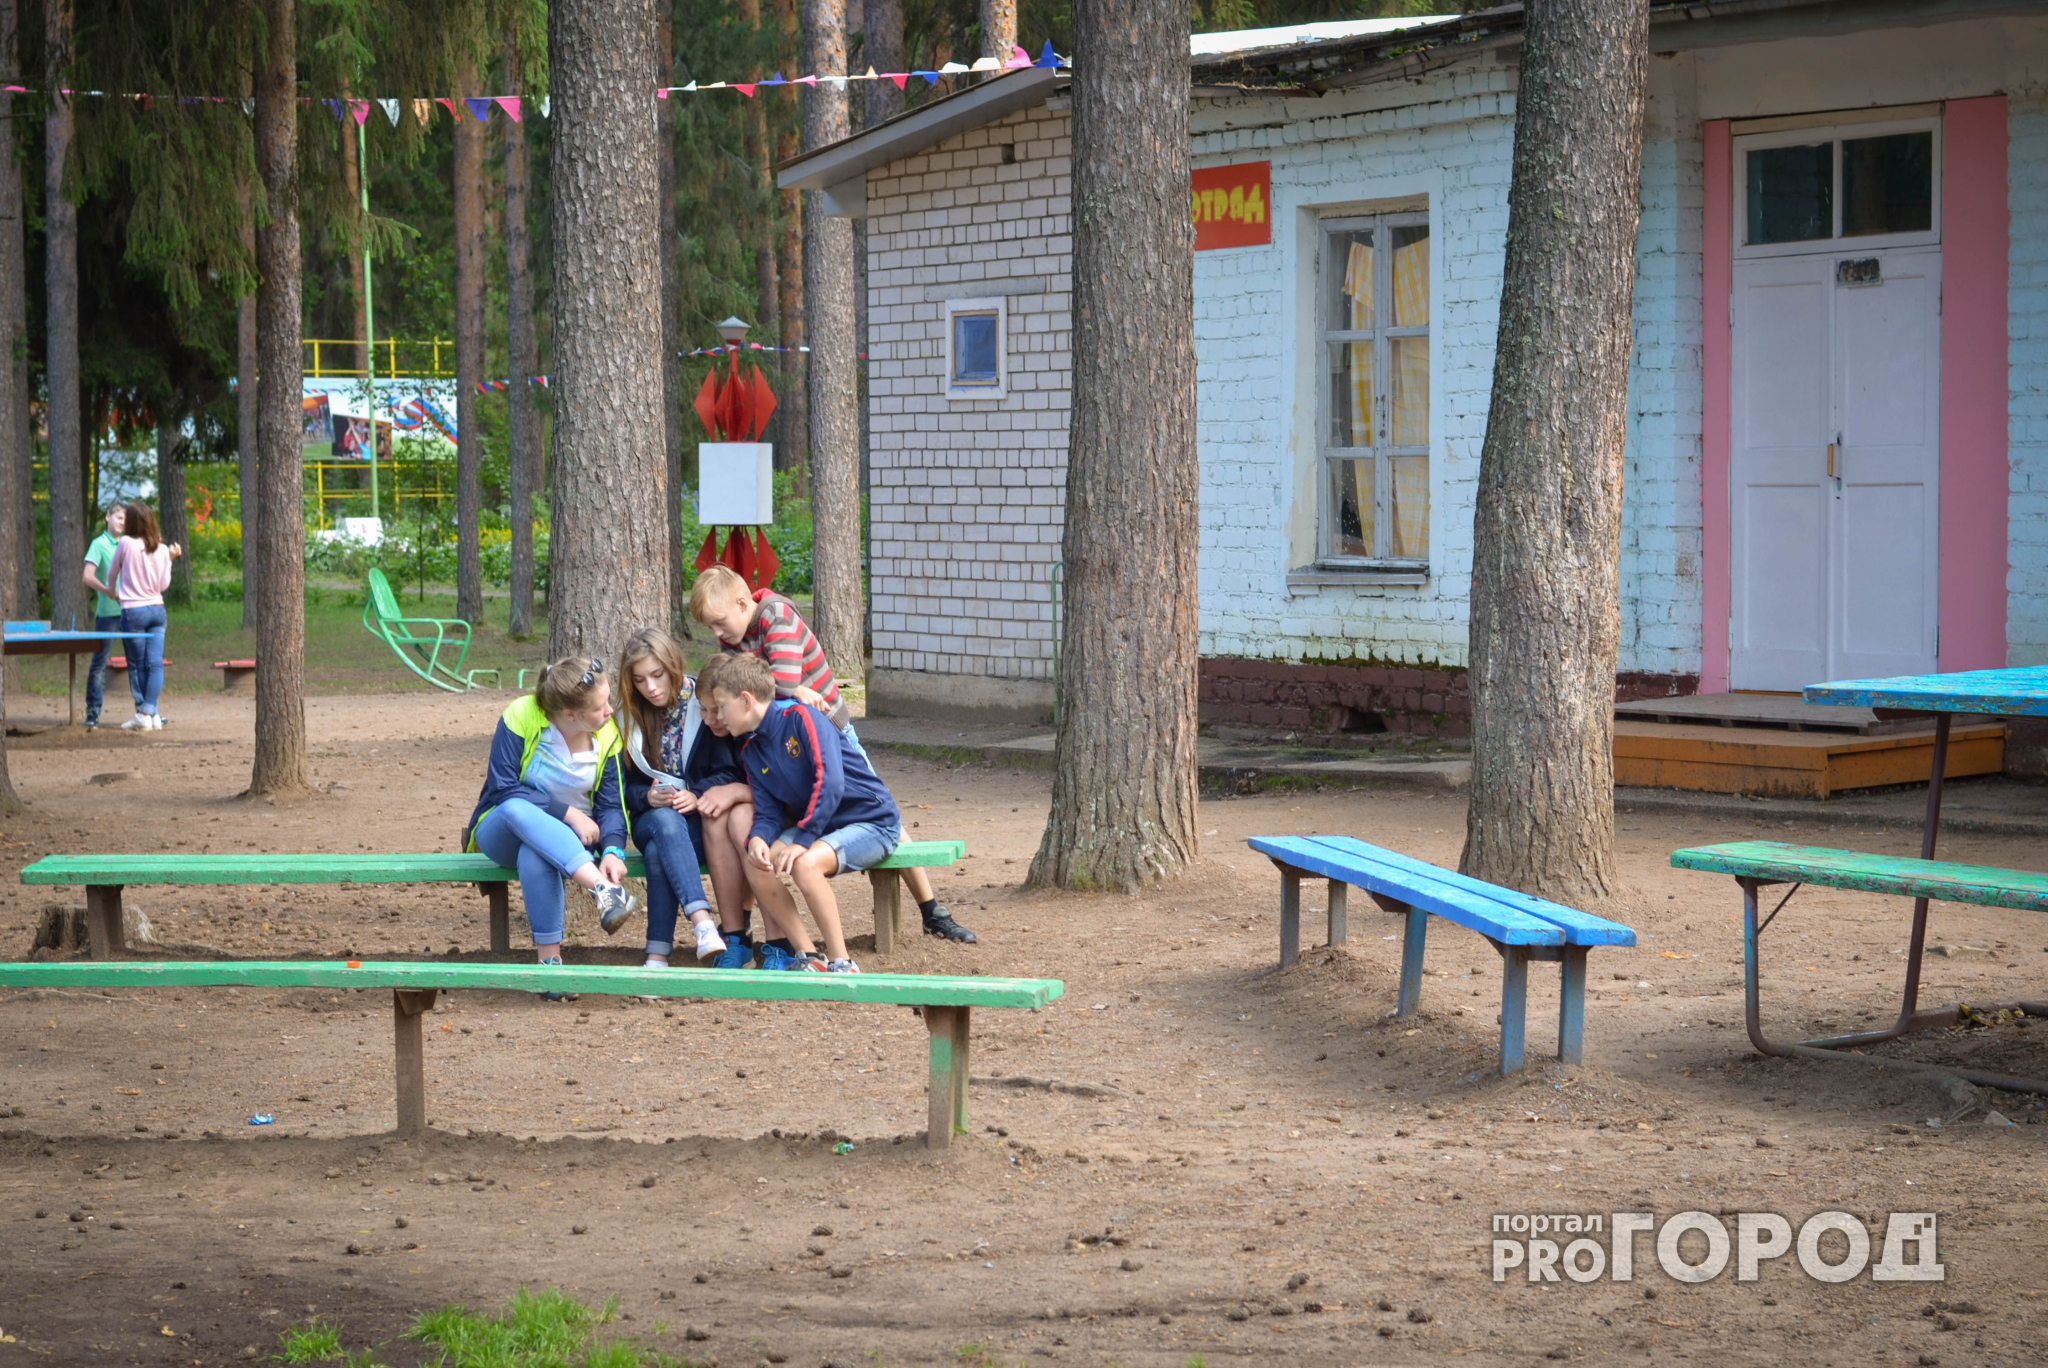 Бассейн, сауна, банкеты: топ-5 самых дорогих нижегородских лагерей для детей